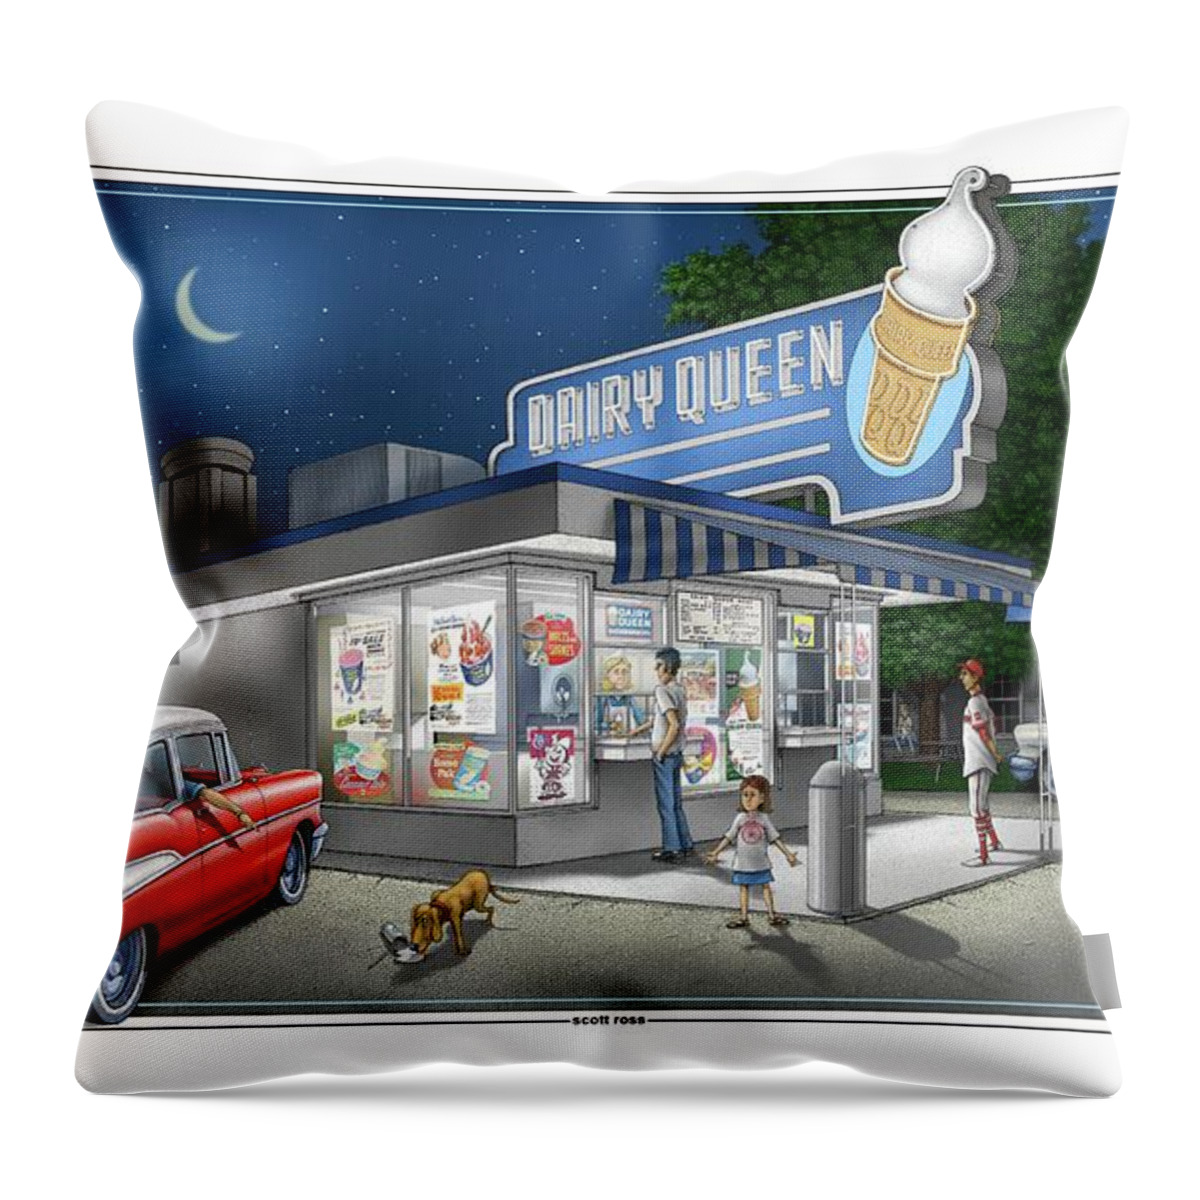 Dairy Queen Throw Pillow featuring the digital art Dairy Queen #1 by Scott Ross